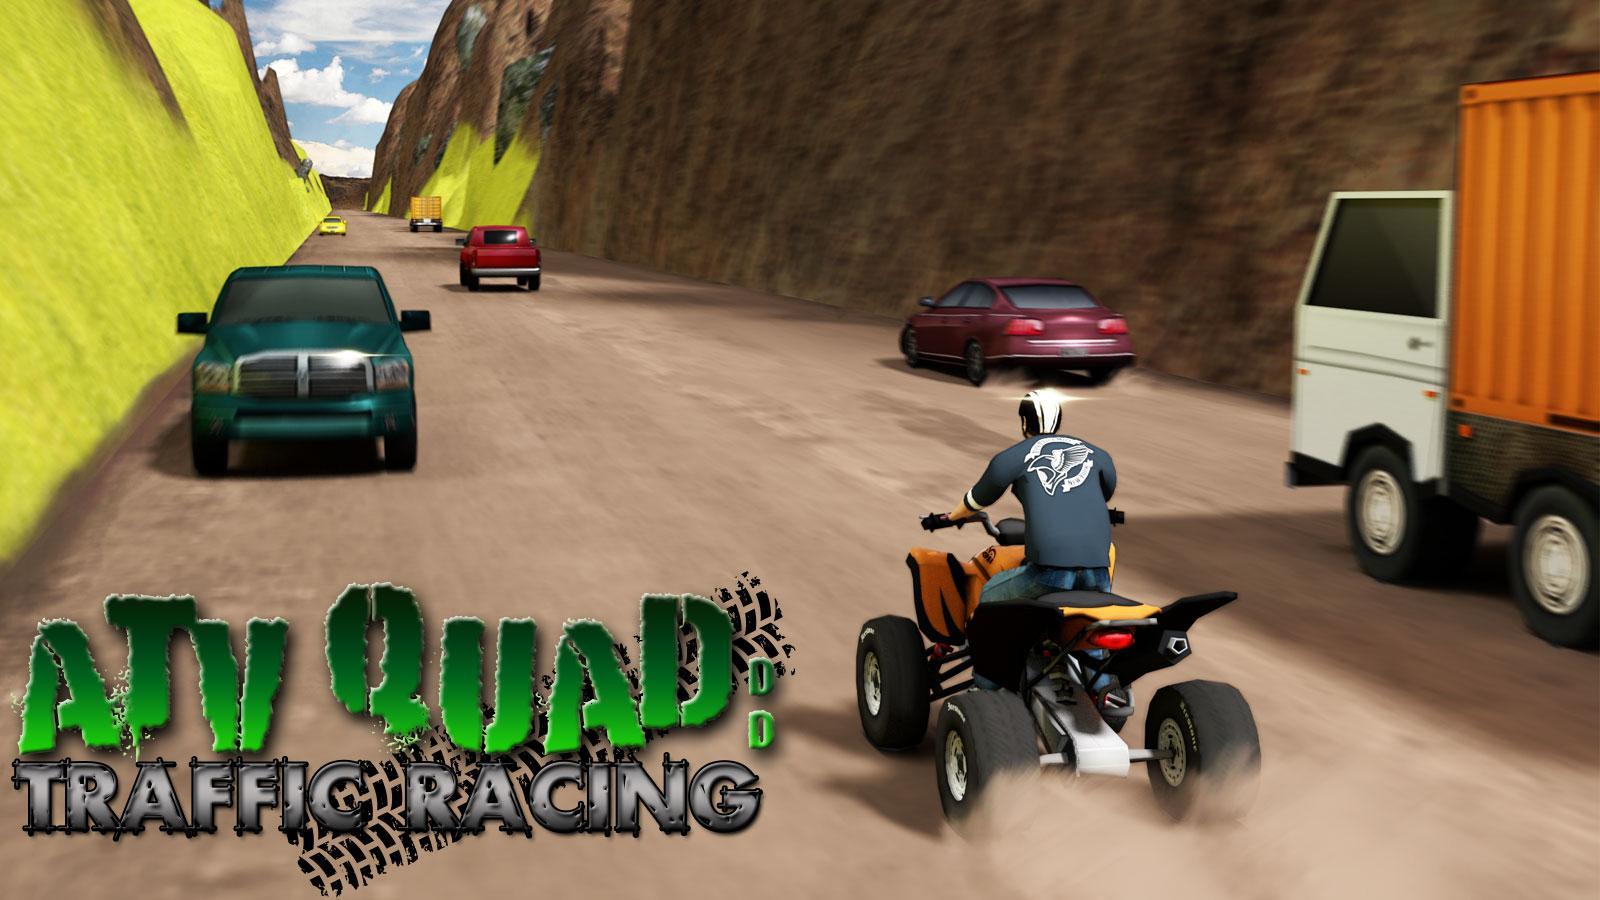 Screenshot 1 of Quad Quad Traffic Racing 1.1.1